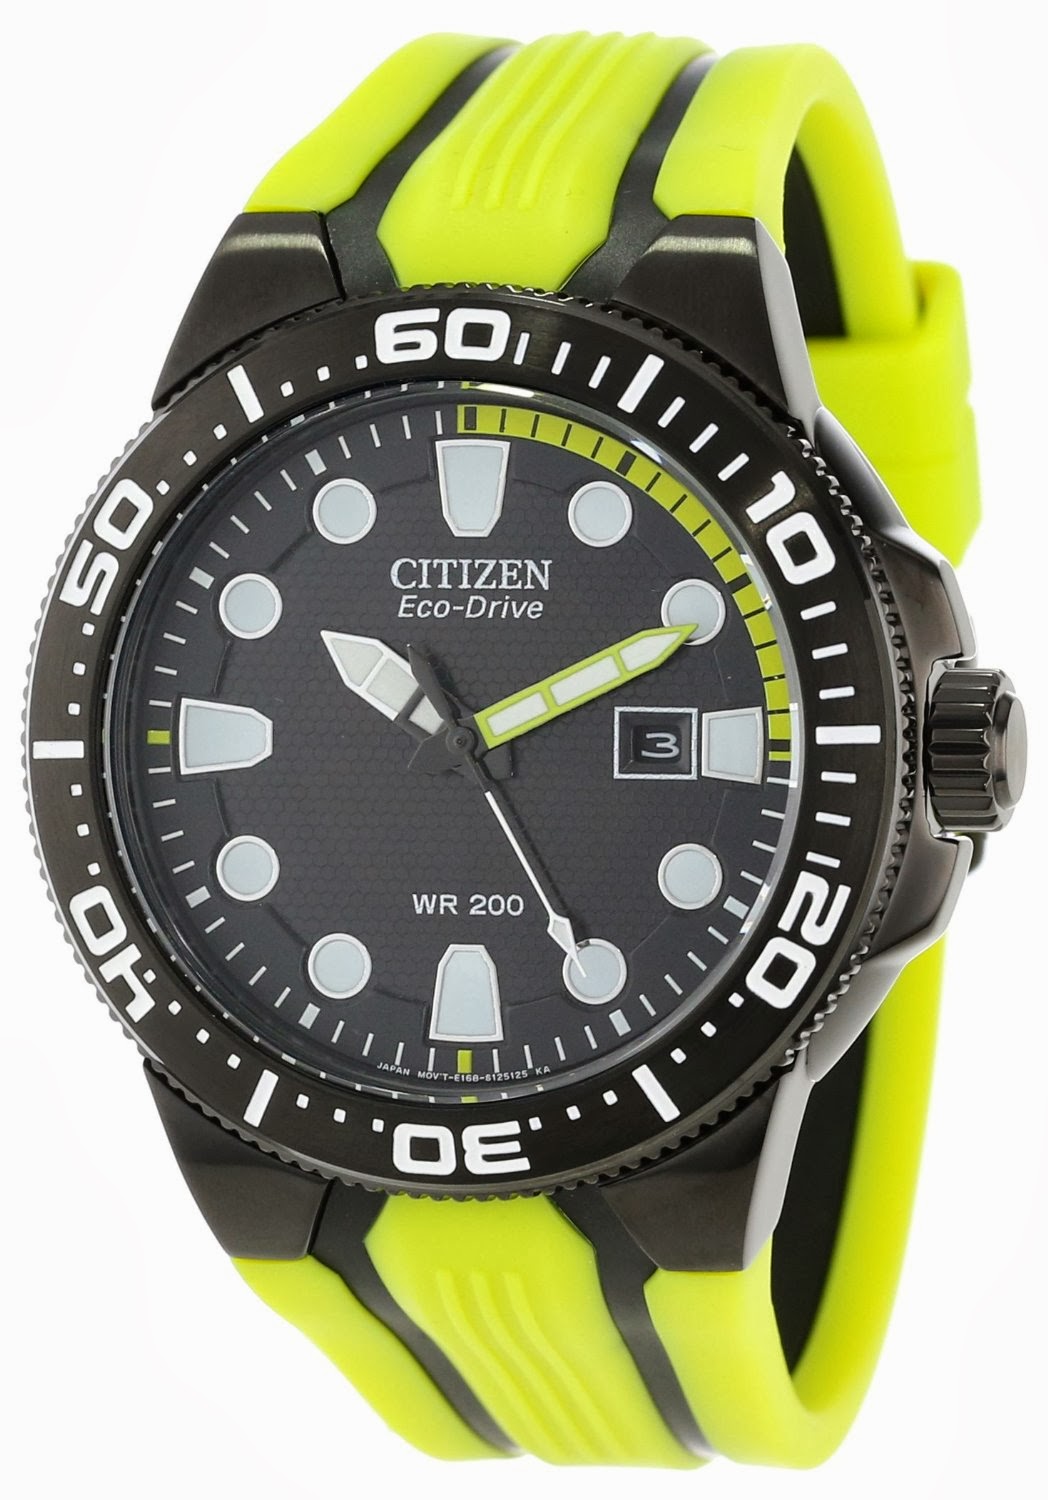 Dive Watches - Citizen, Seiko, CASIO, Timex eBay